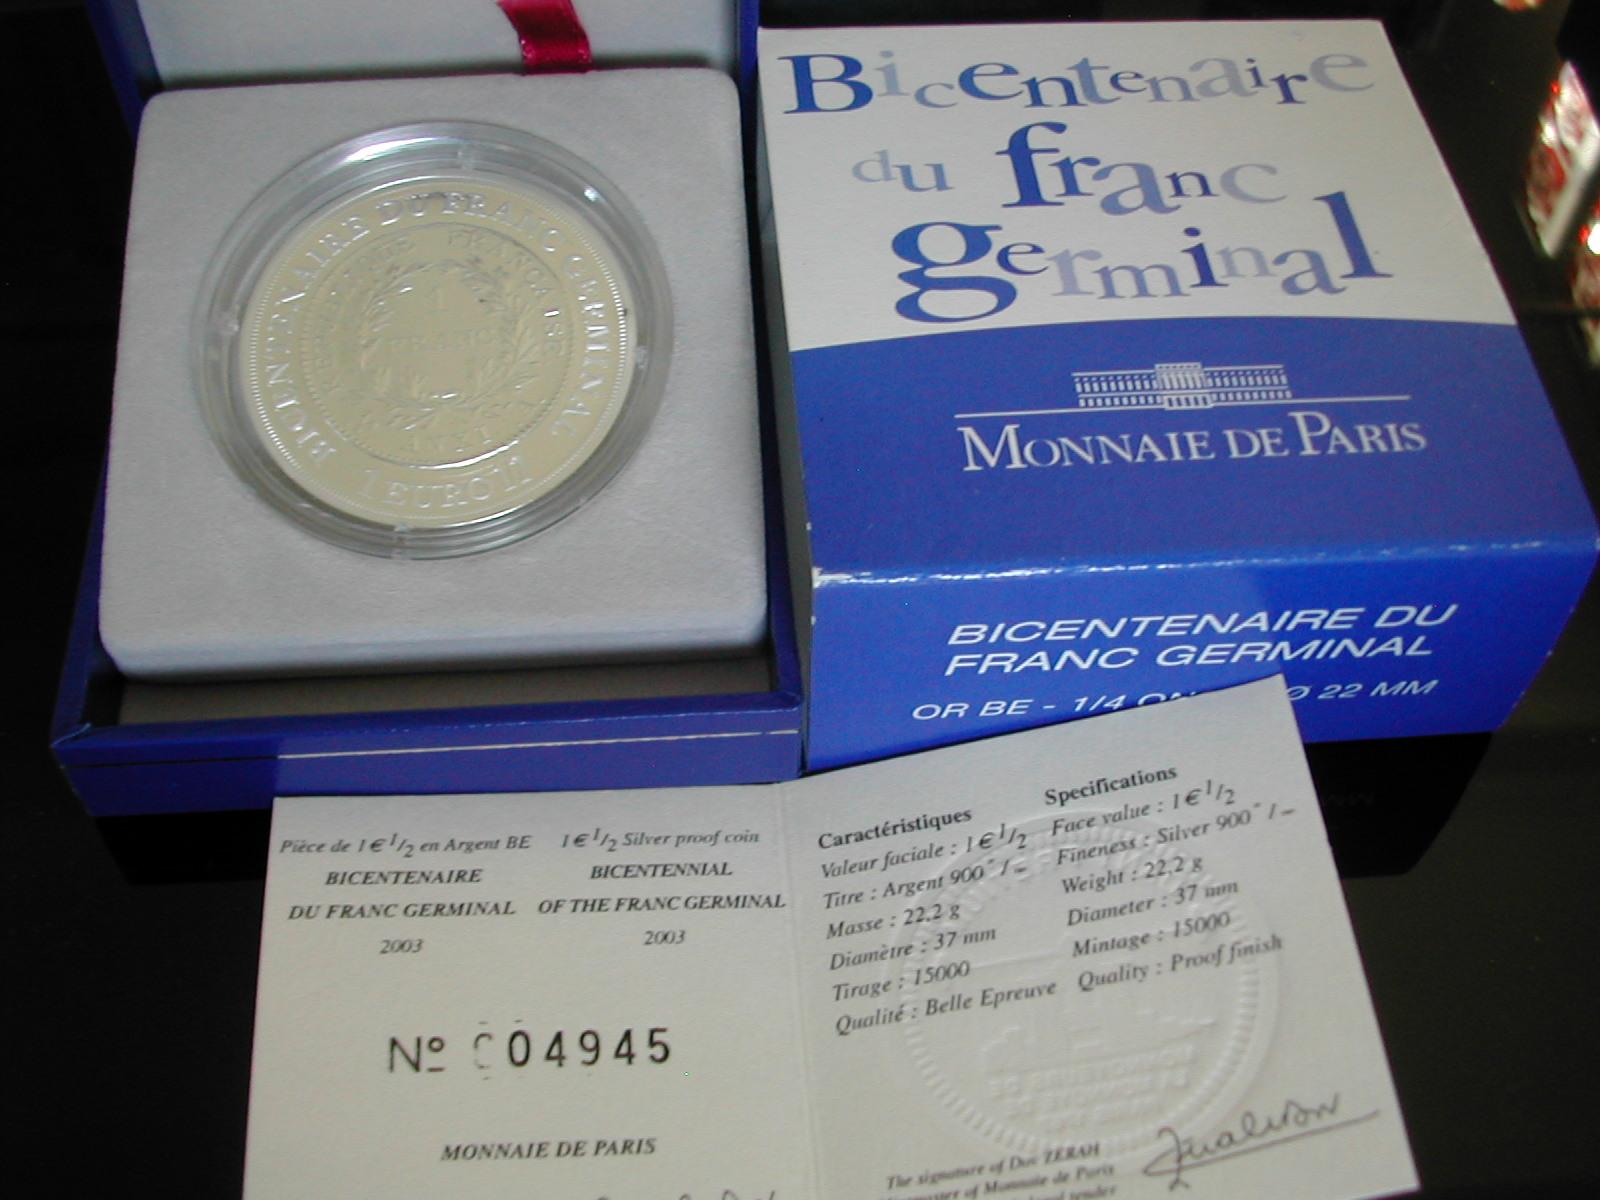 1 5 france 2003 bicentenaire du franc germinal a